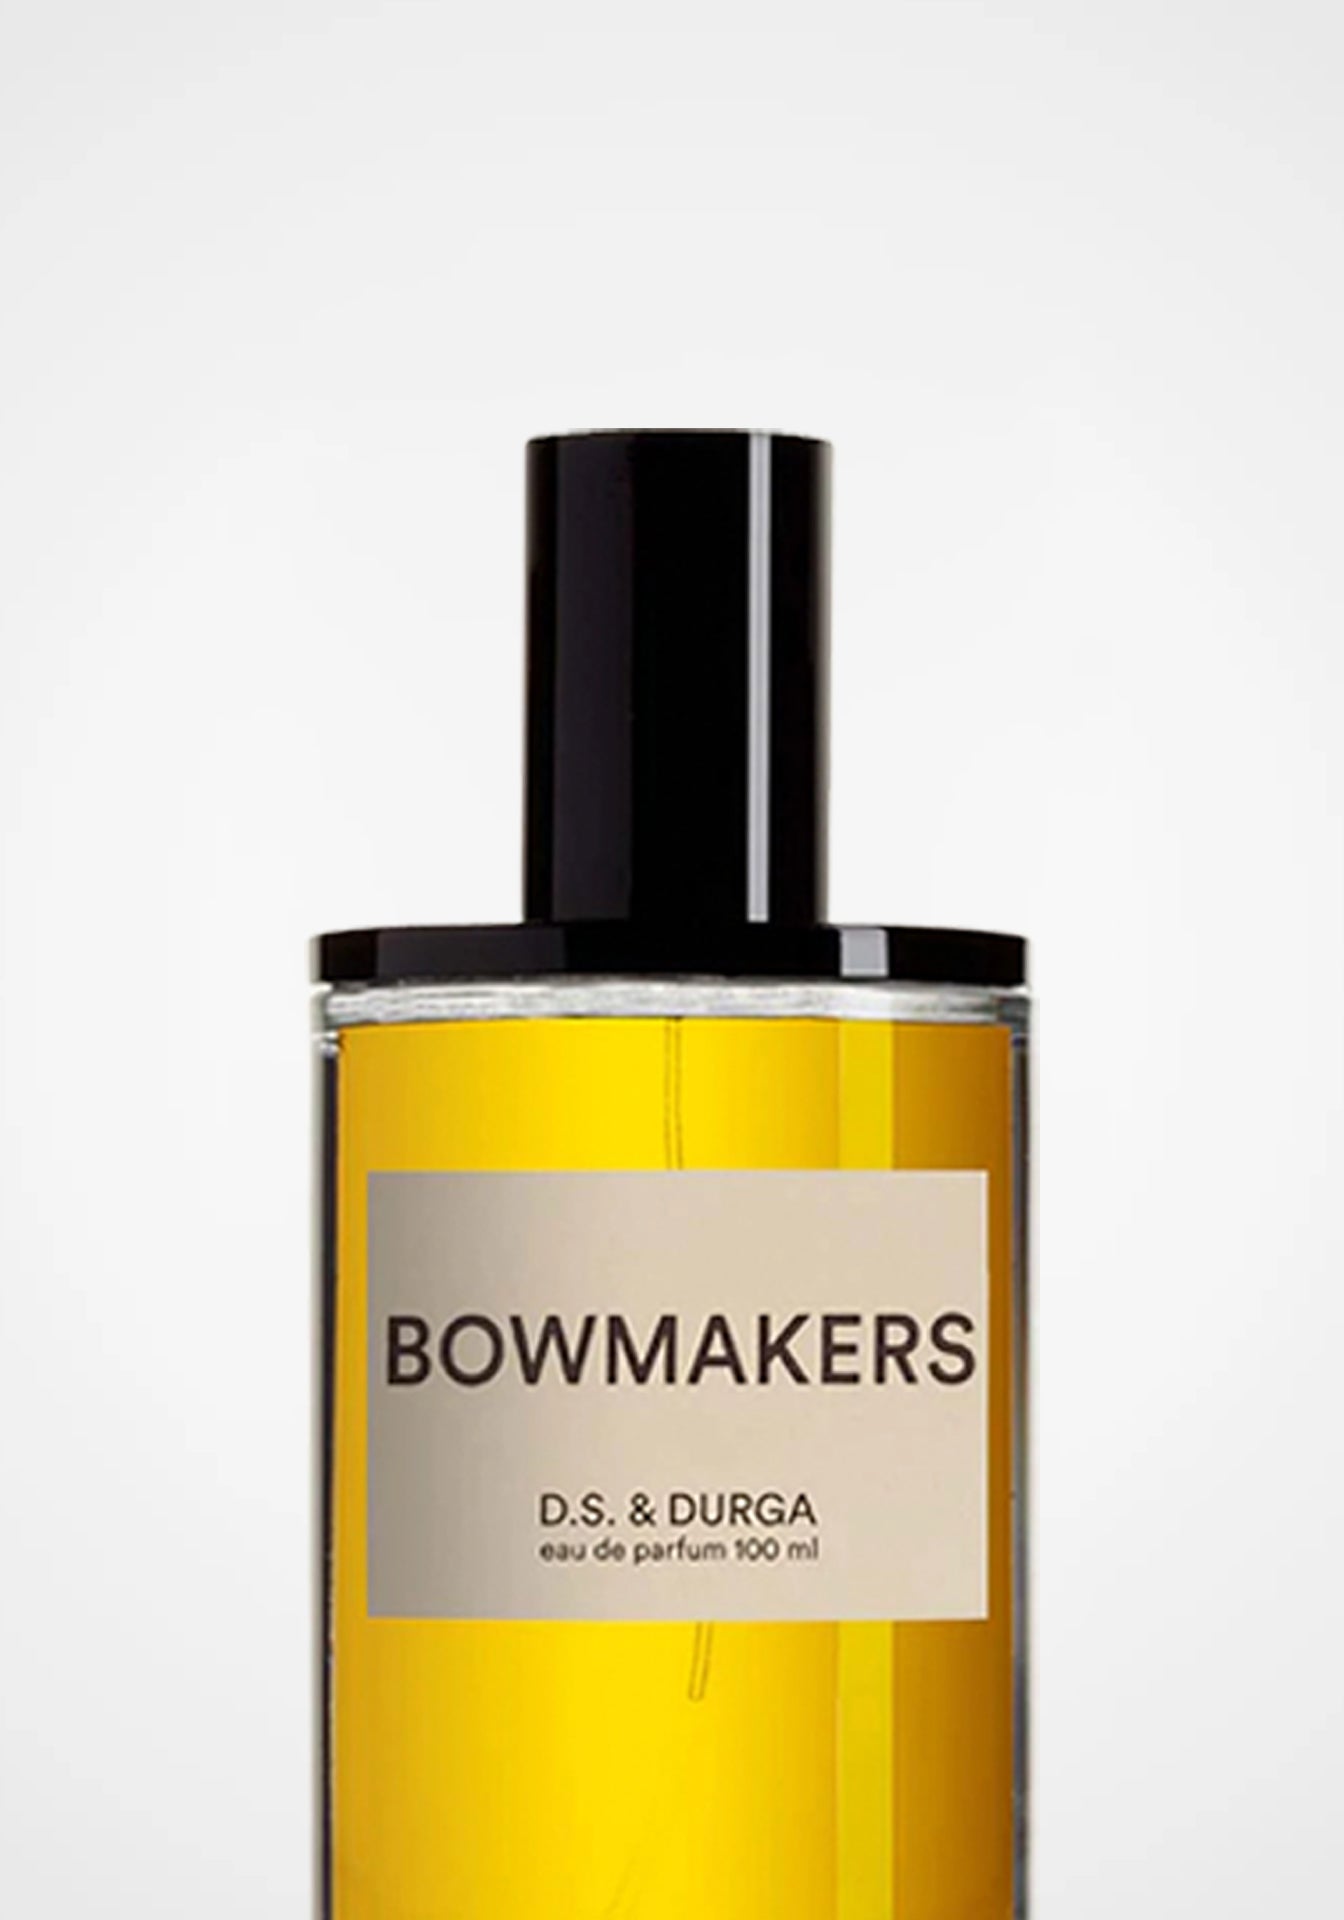 Bowmakers Eau De Parfum, 100ml – The Conservatory NYC